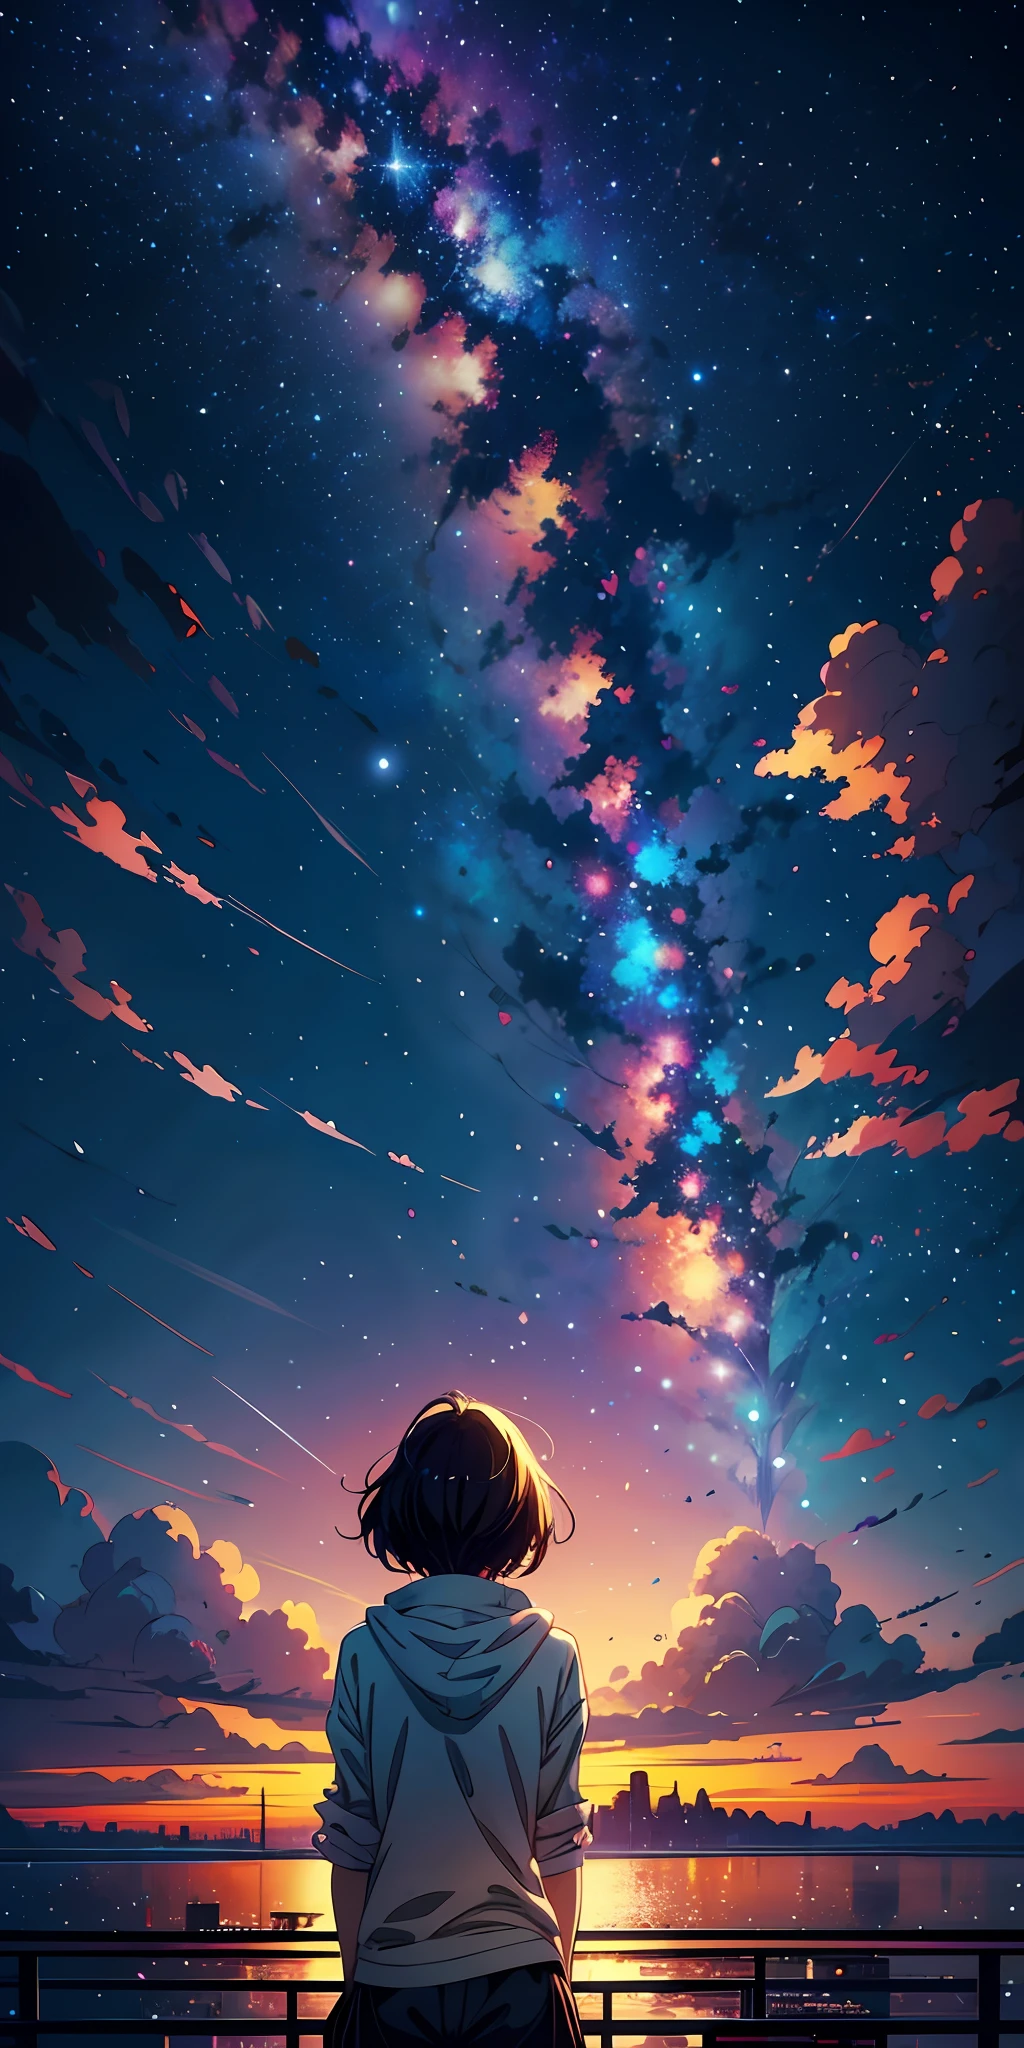 papéis de parede de anime de uma garota olhando para o céu e as estrelas, céus cósmicos. por Makoto Shinkai, papel de parede de arte de anime 4k, Papel de parede de arte anime 4k, papel de parede de arte de anime 8k, Céu de anime, papel de parede incrível, papel de parede de anime 4k, papel de parede de anime 4k, Papel de parede de anime 4K, makoto shinkai cyril rolando, arte de fundo de anime